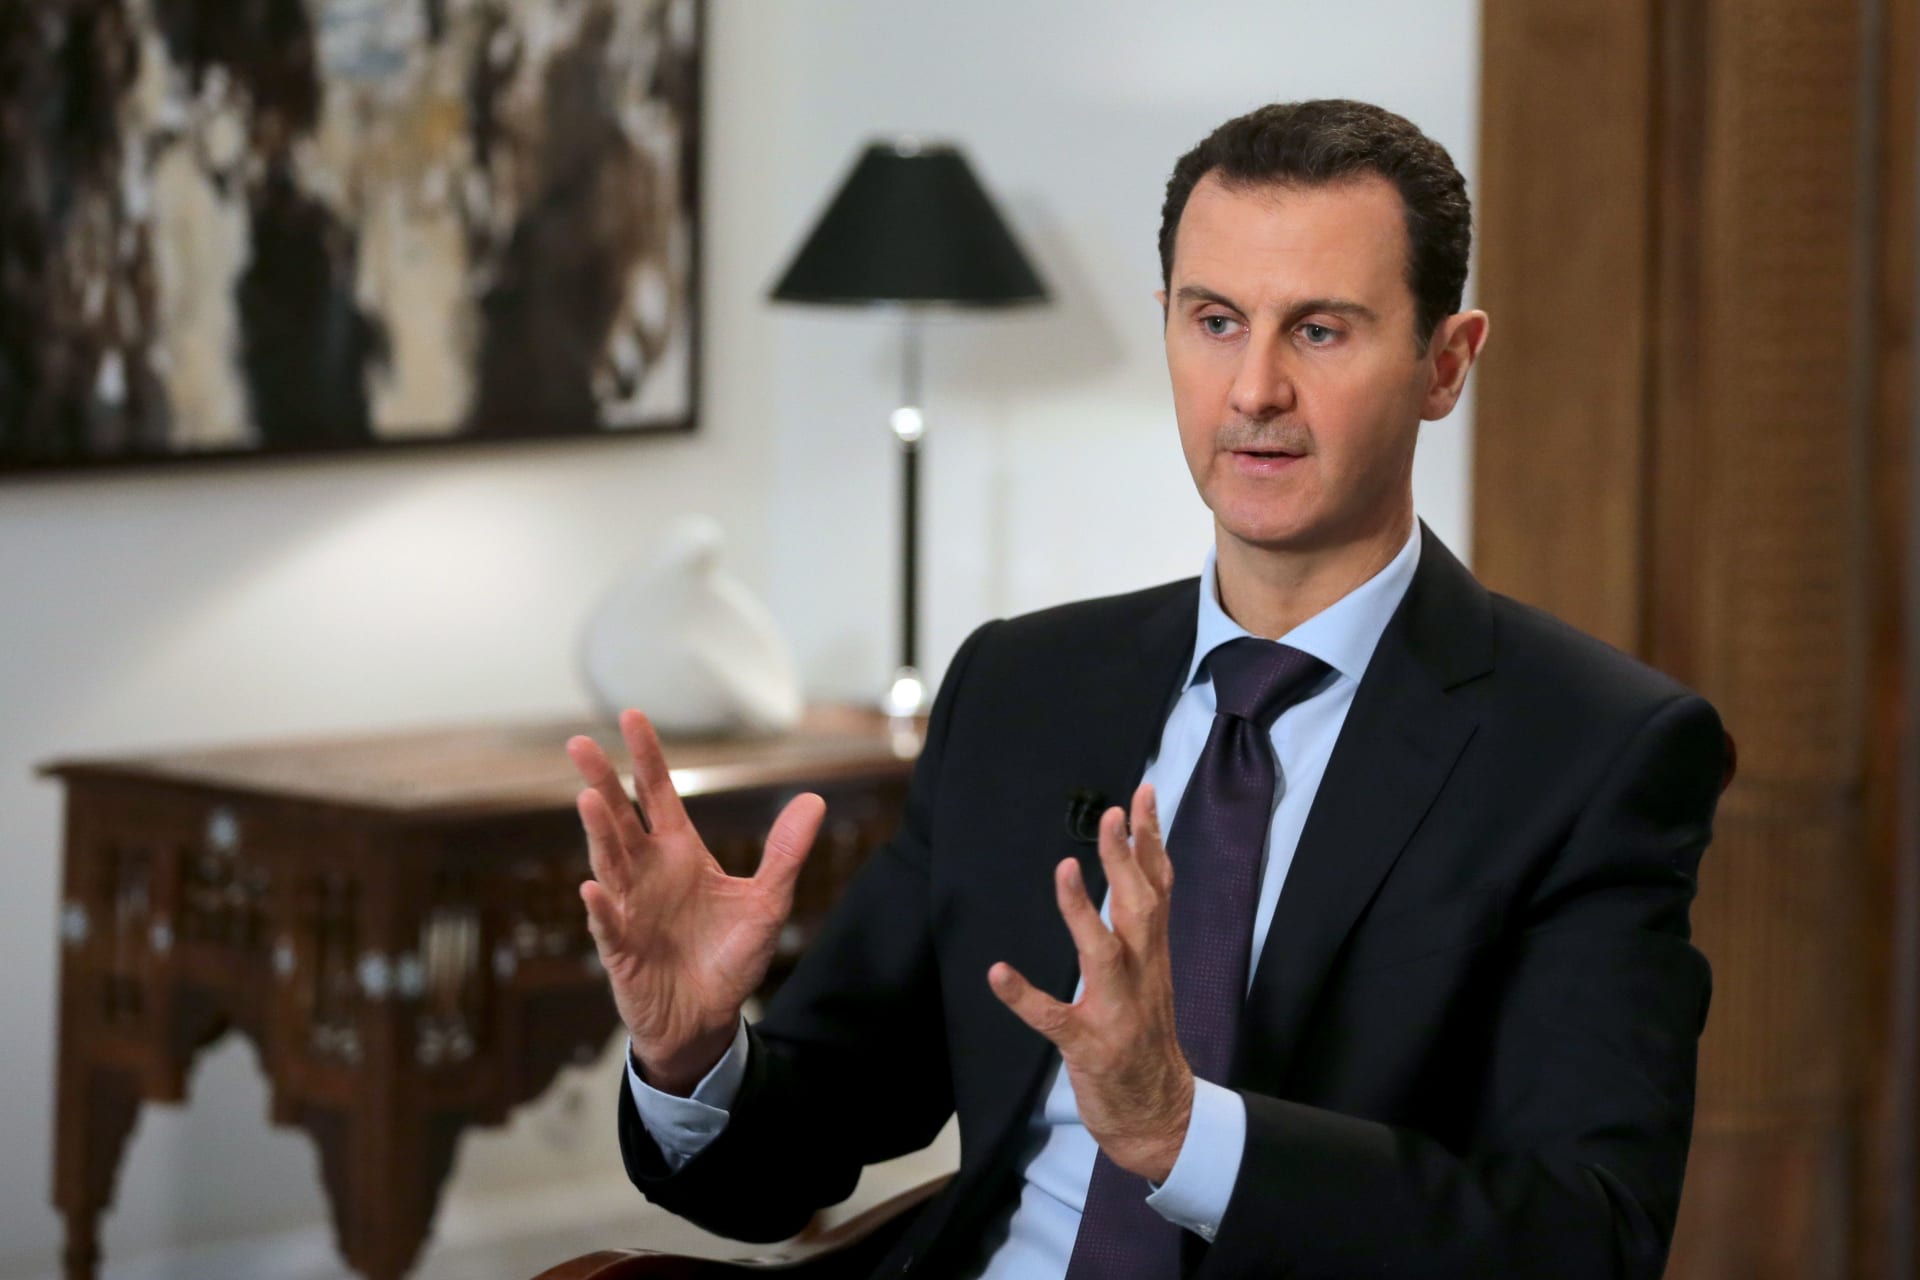 سوريا تزود بيروت بـ25 طنا من الأوكسجين.. ووزير الصحة اللبناني يشكر الأسد